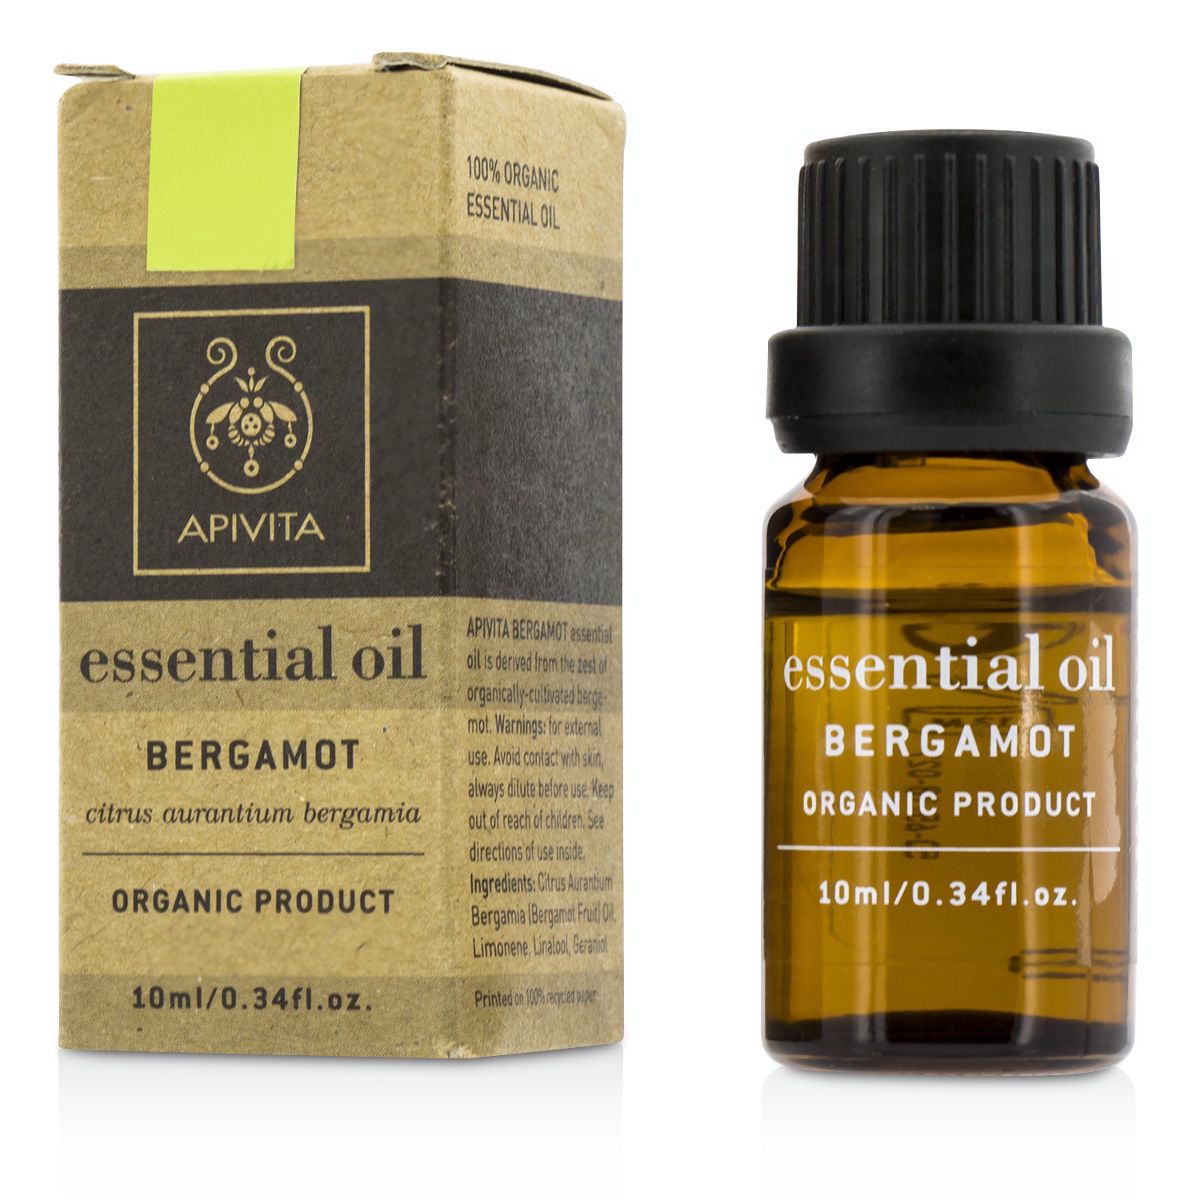 Essential Oil - Bergamot Apivita Image